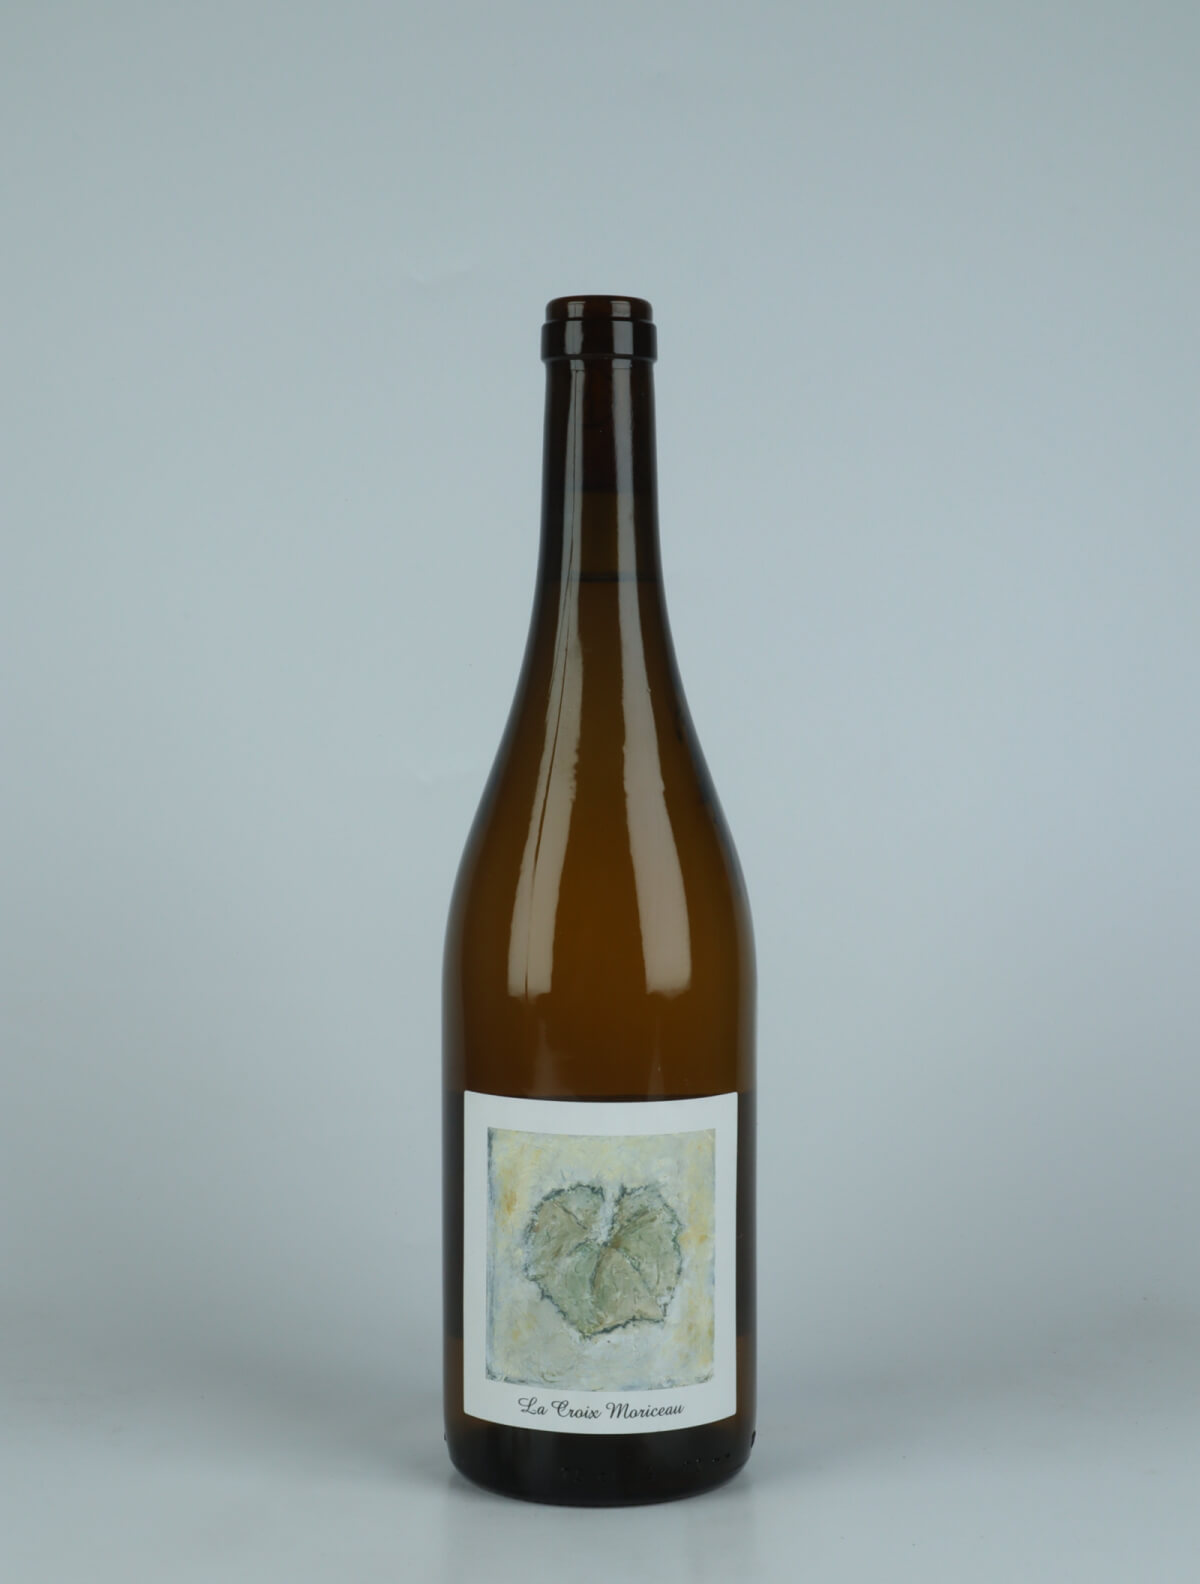 A bottle 2022 La Croix Moriceau White wine from Complémen'terre, Loire in France